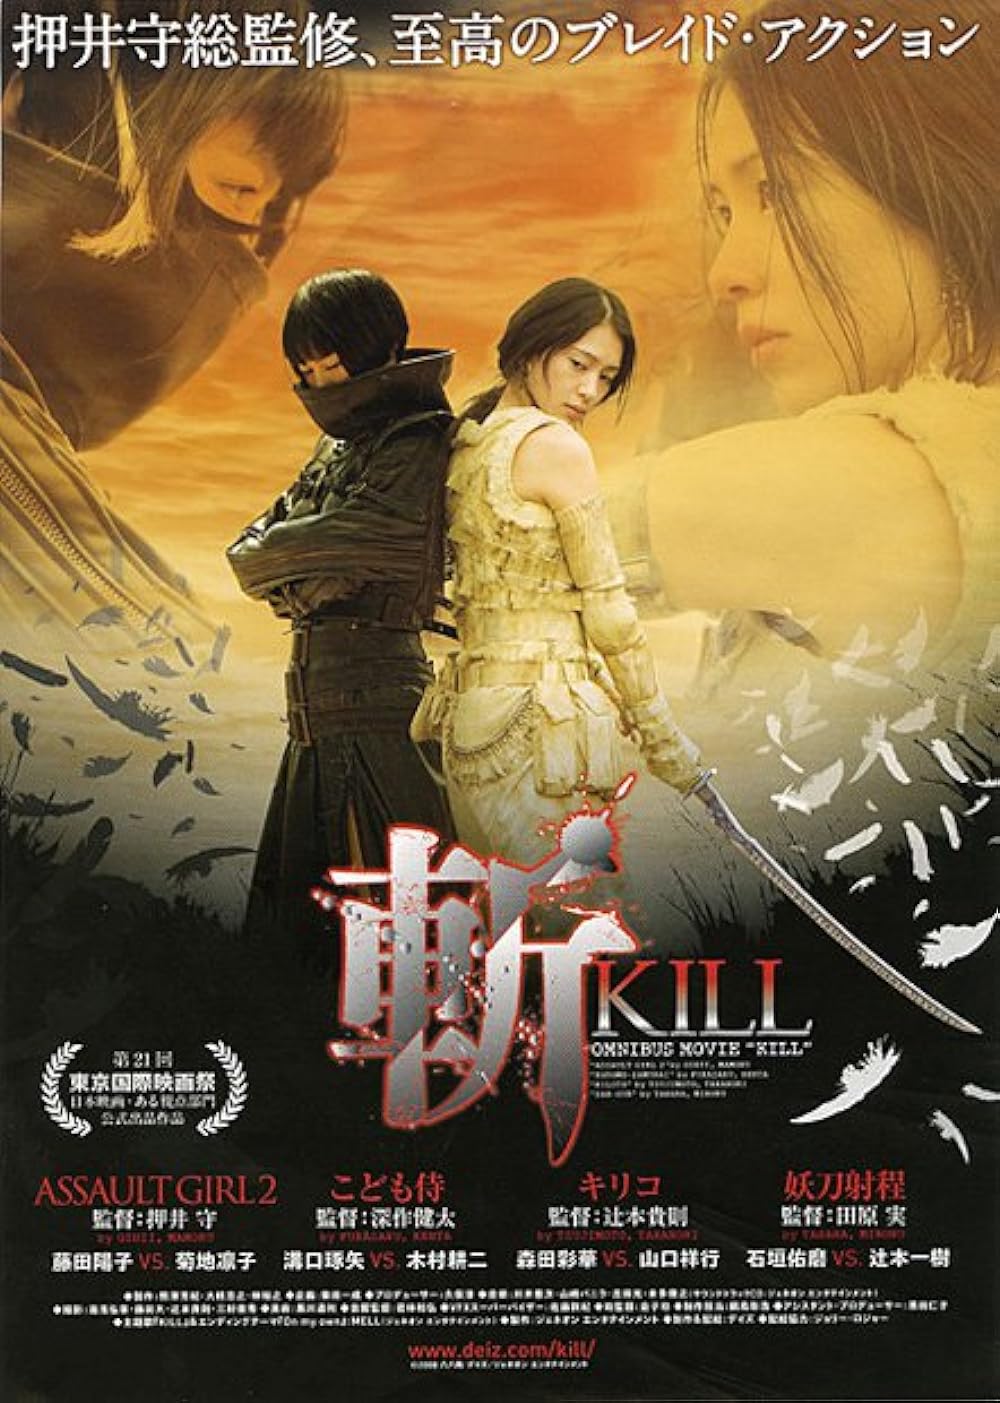 دانلود فیلم Kill 2008